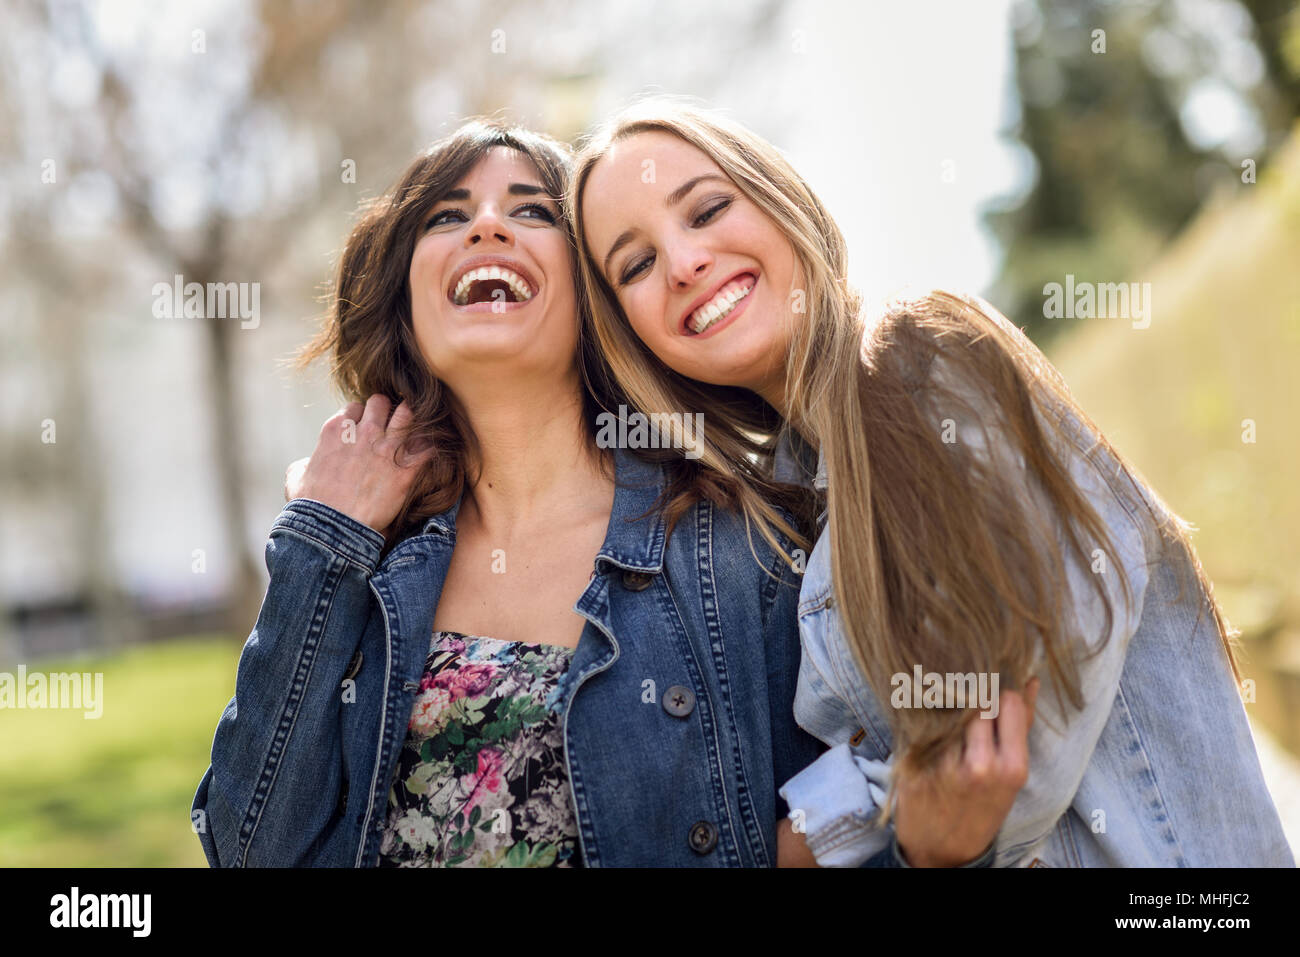 Zwei glückliche junge Frauen Freunde umarmen in der Straße. Blonde und brünette Mädchen legere Kleidung im Freien. Stockfoto